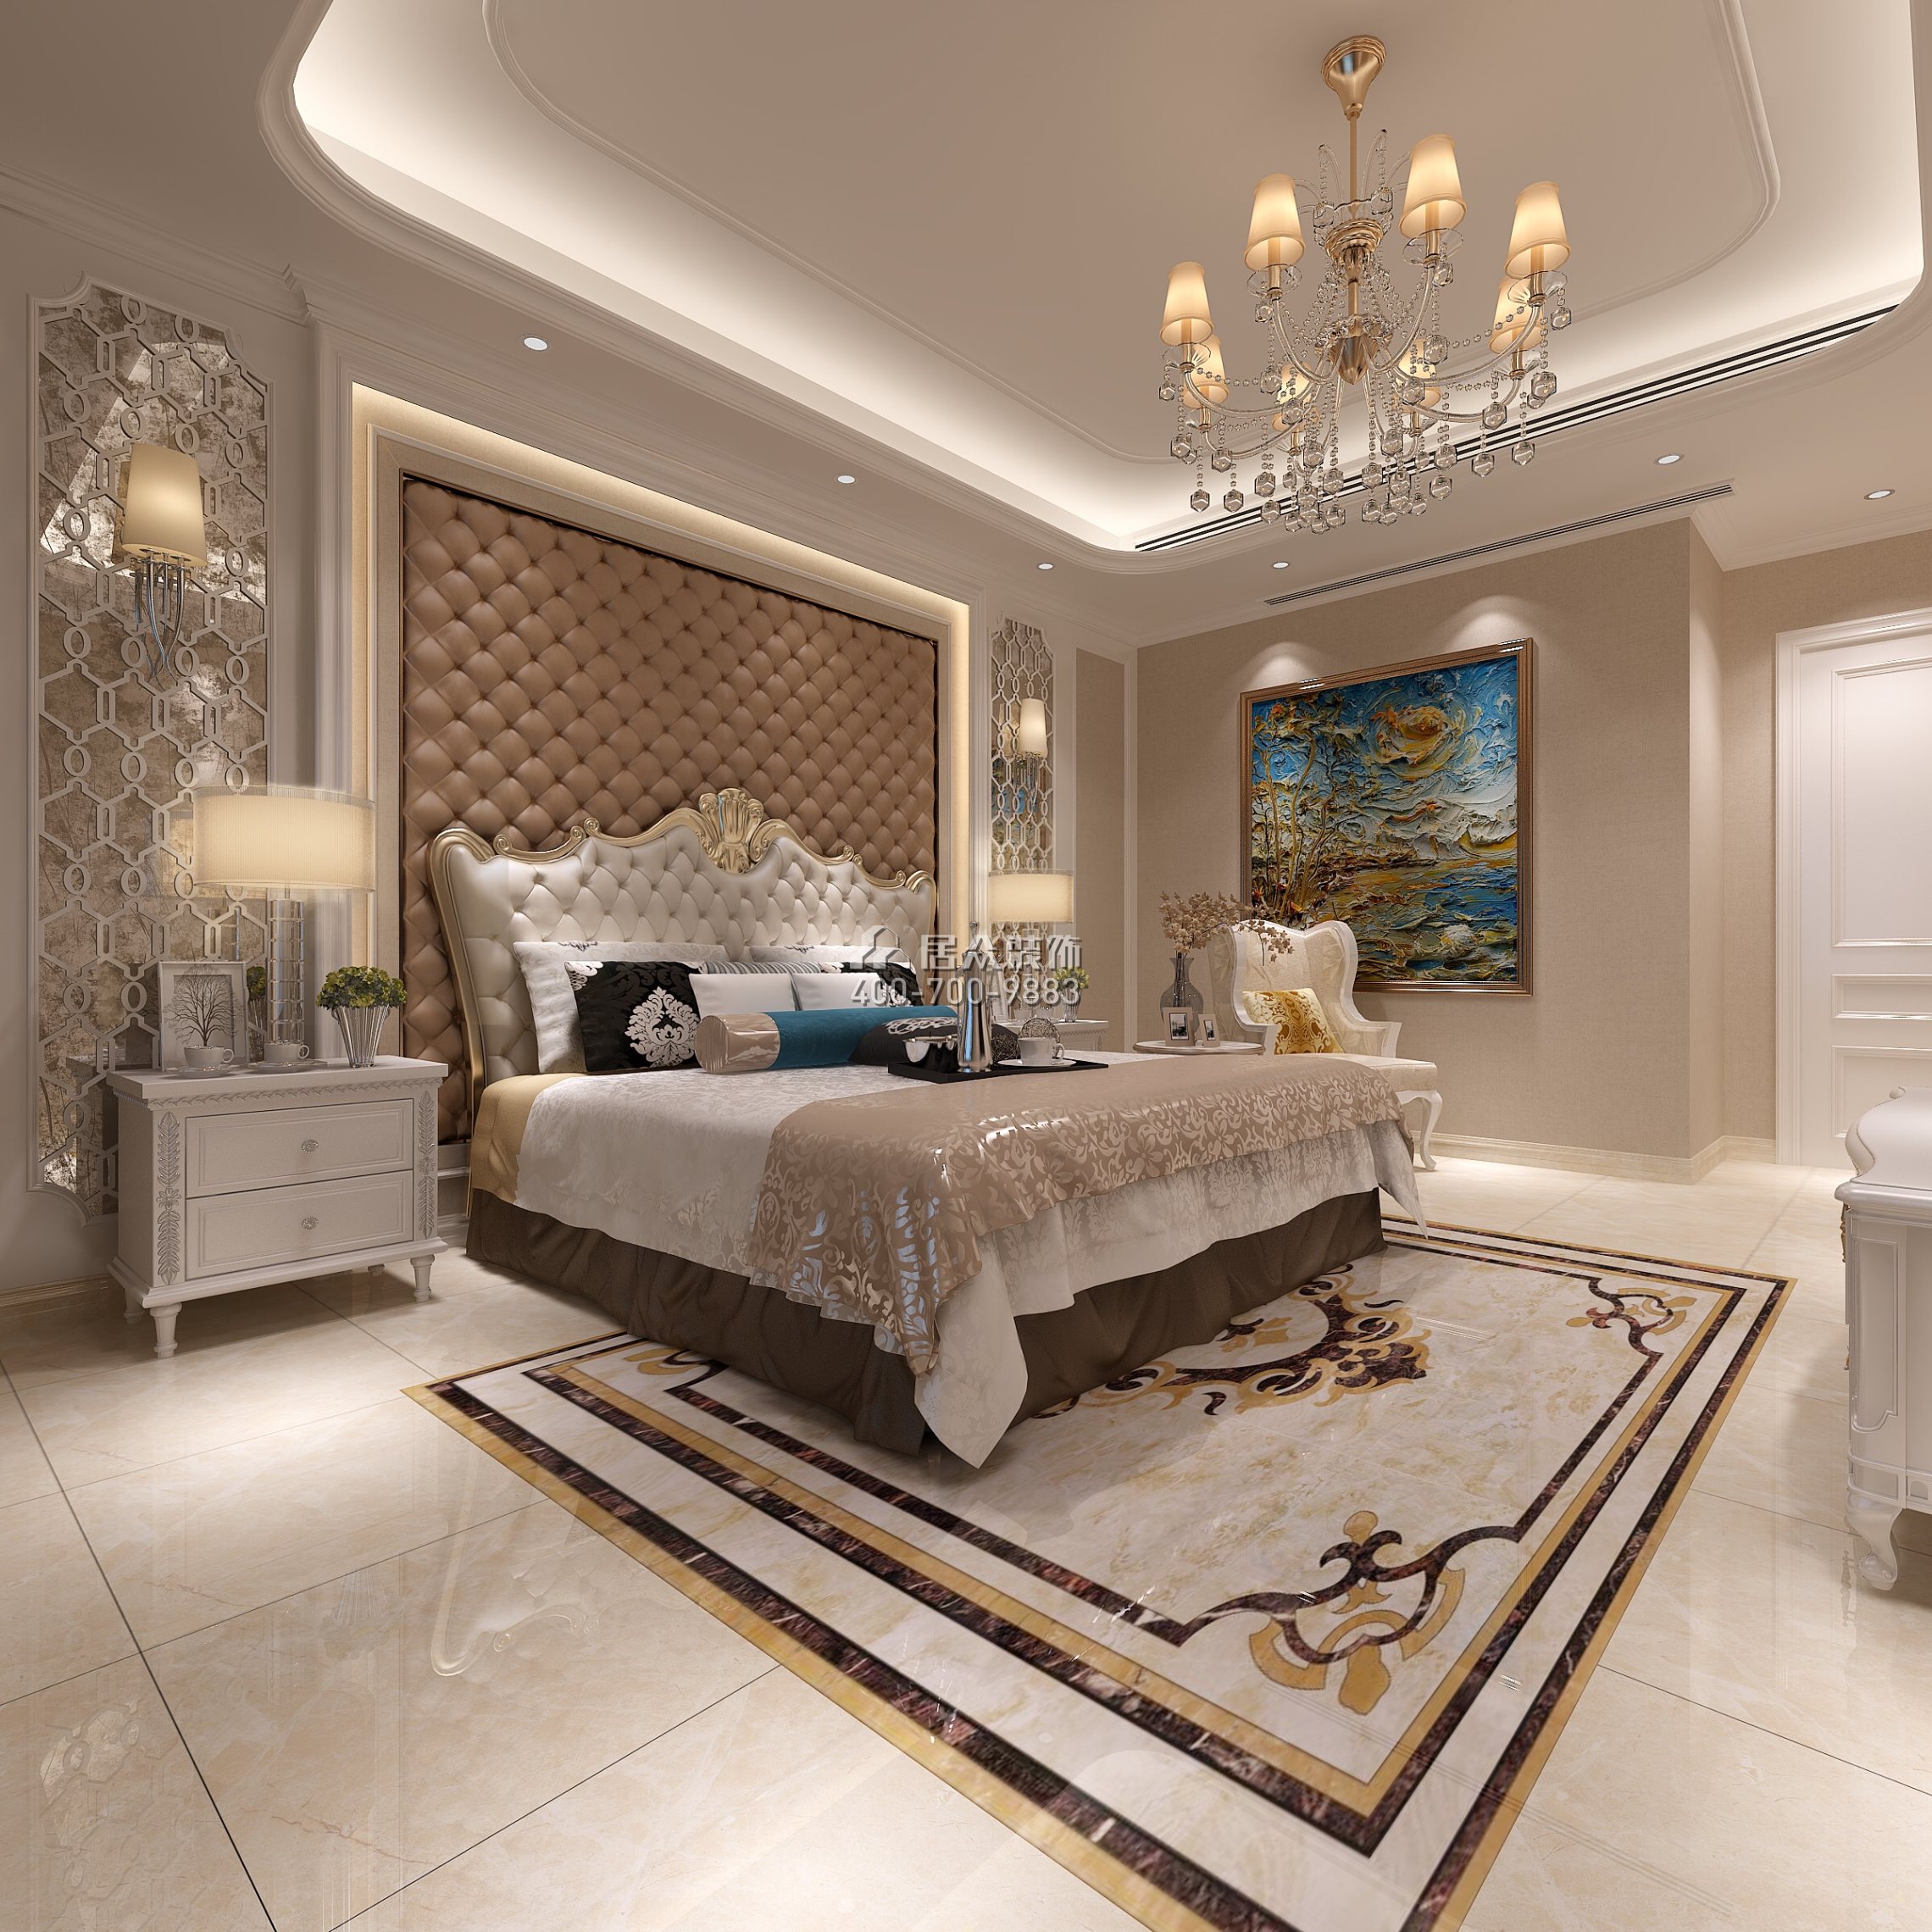 广州华发四季186平方米欧式风格平层户型卧室装修效果图